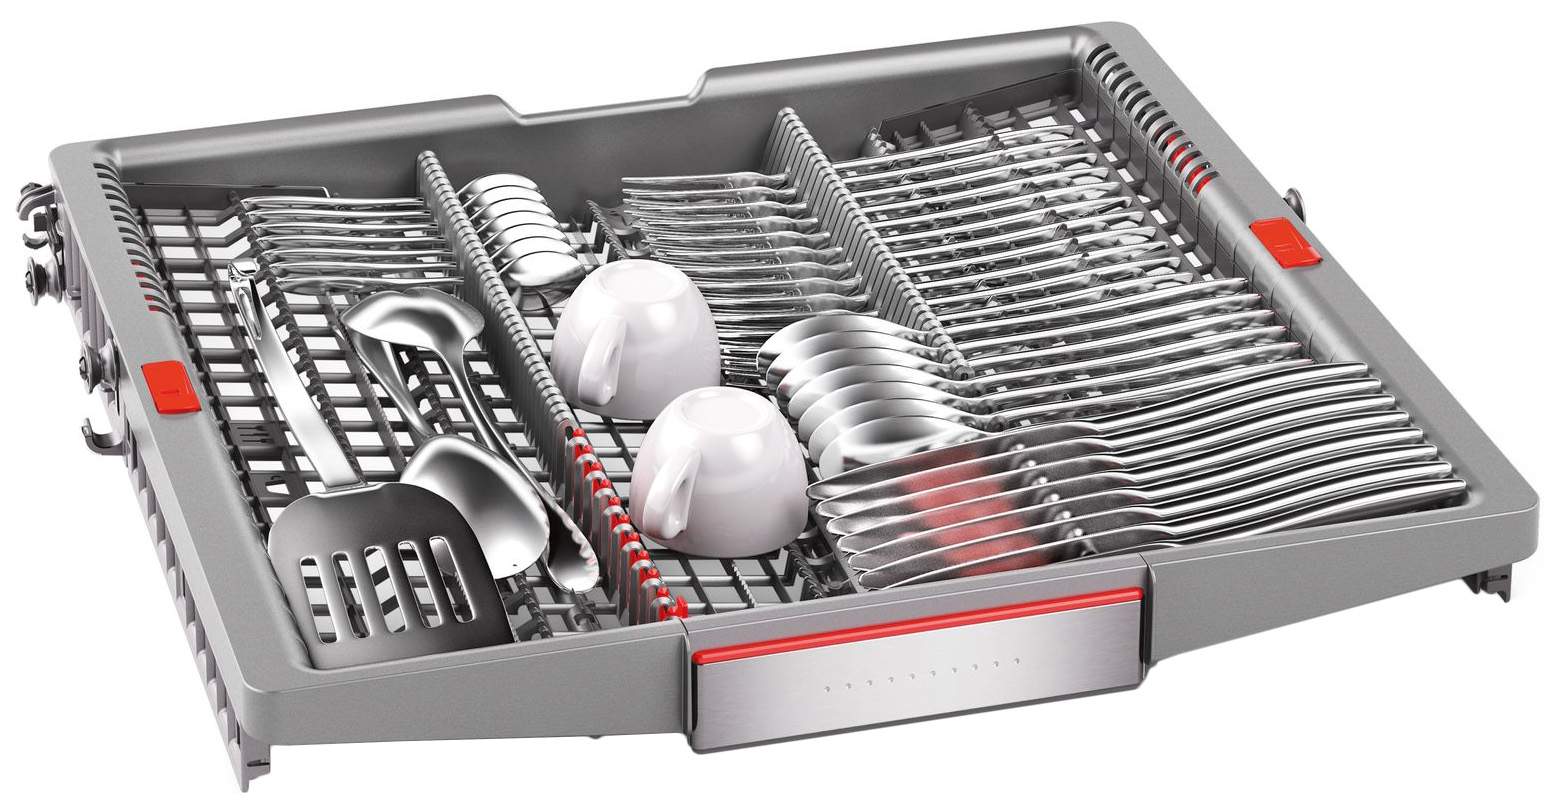 Встраиваемая посудомоечная машина Bosch Serie | 8 SMI88TS00R